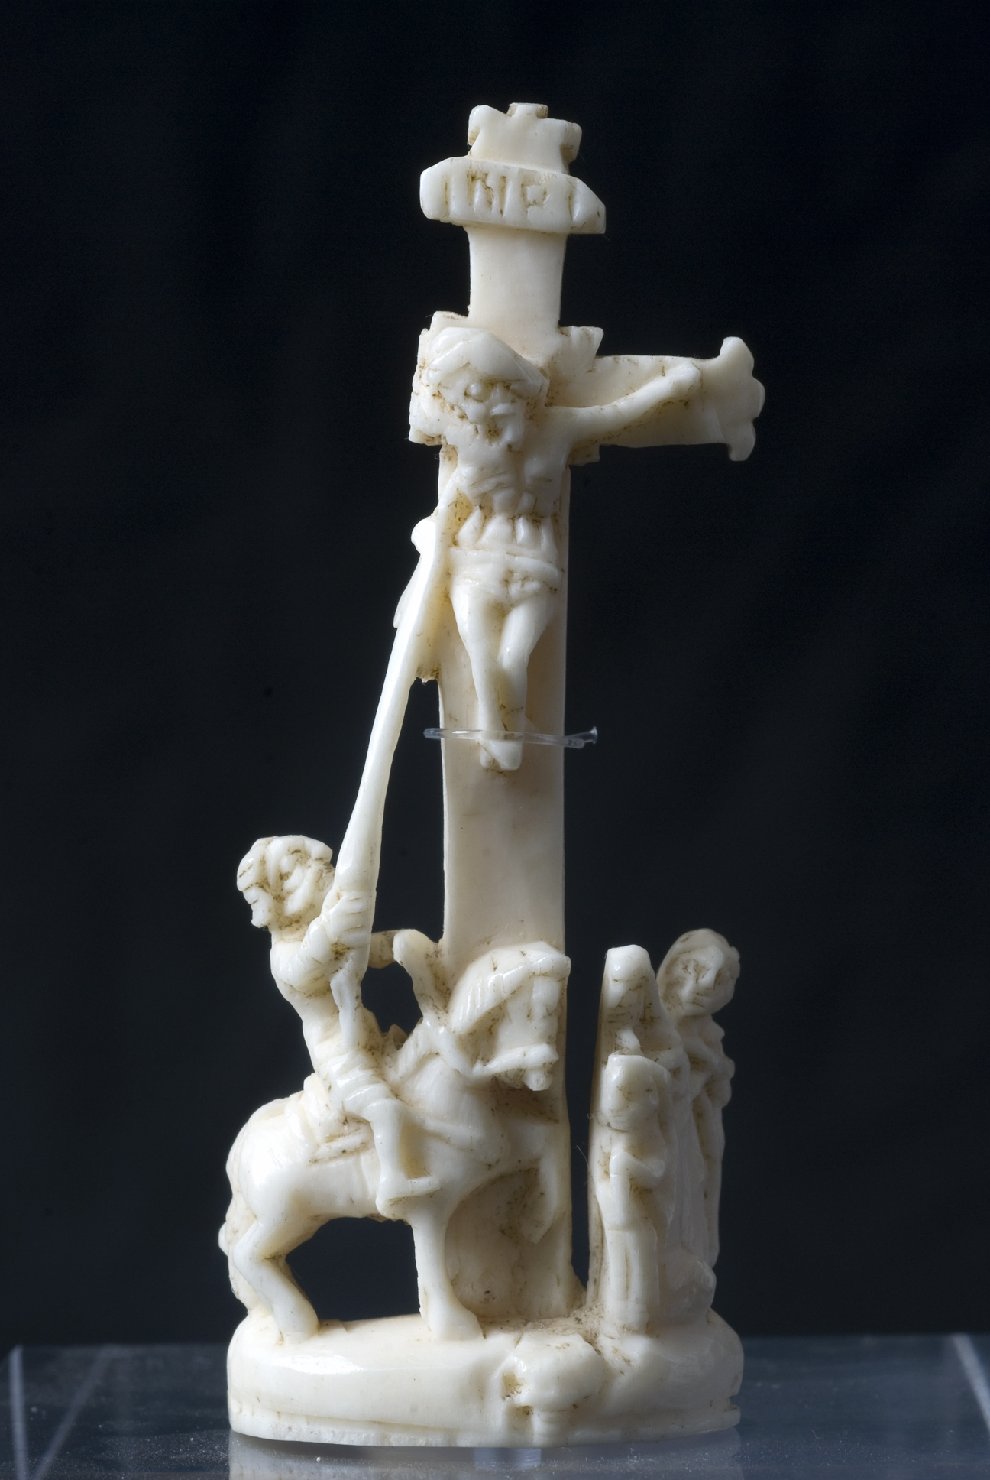 Longino trafigge il fianco di Cristo con la lancia (rilievo, frammento) di Bottega degli Embriachi (attribuito) (prima metà sec. XV)